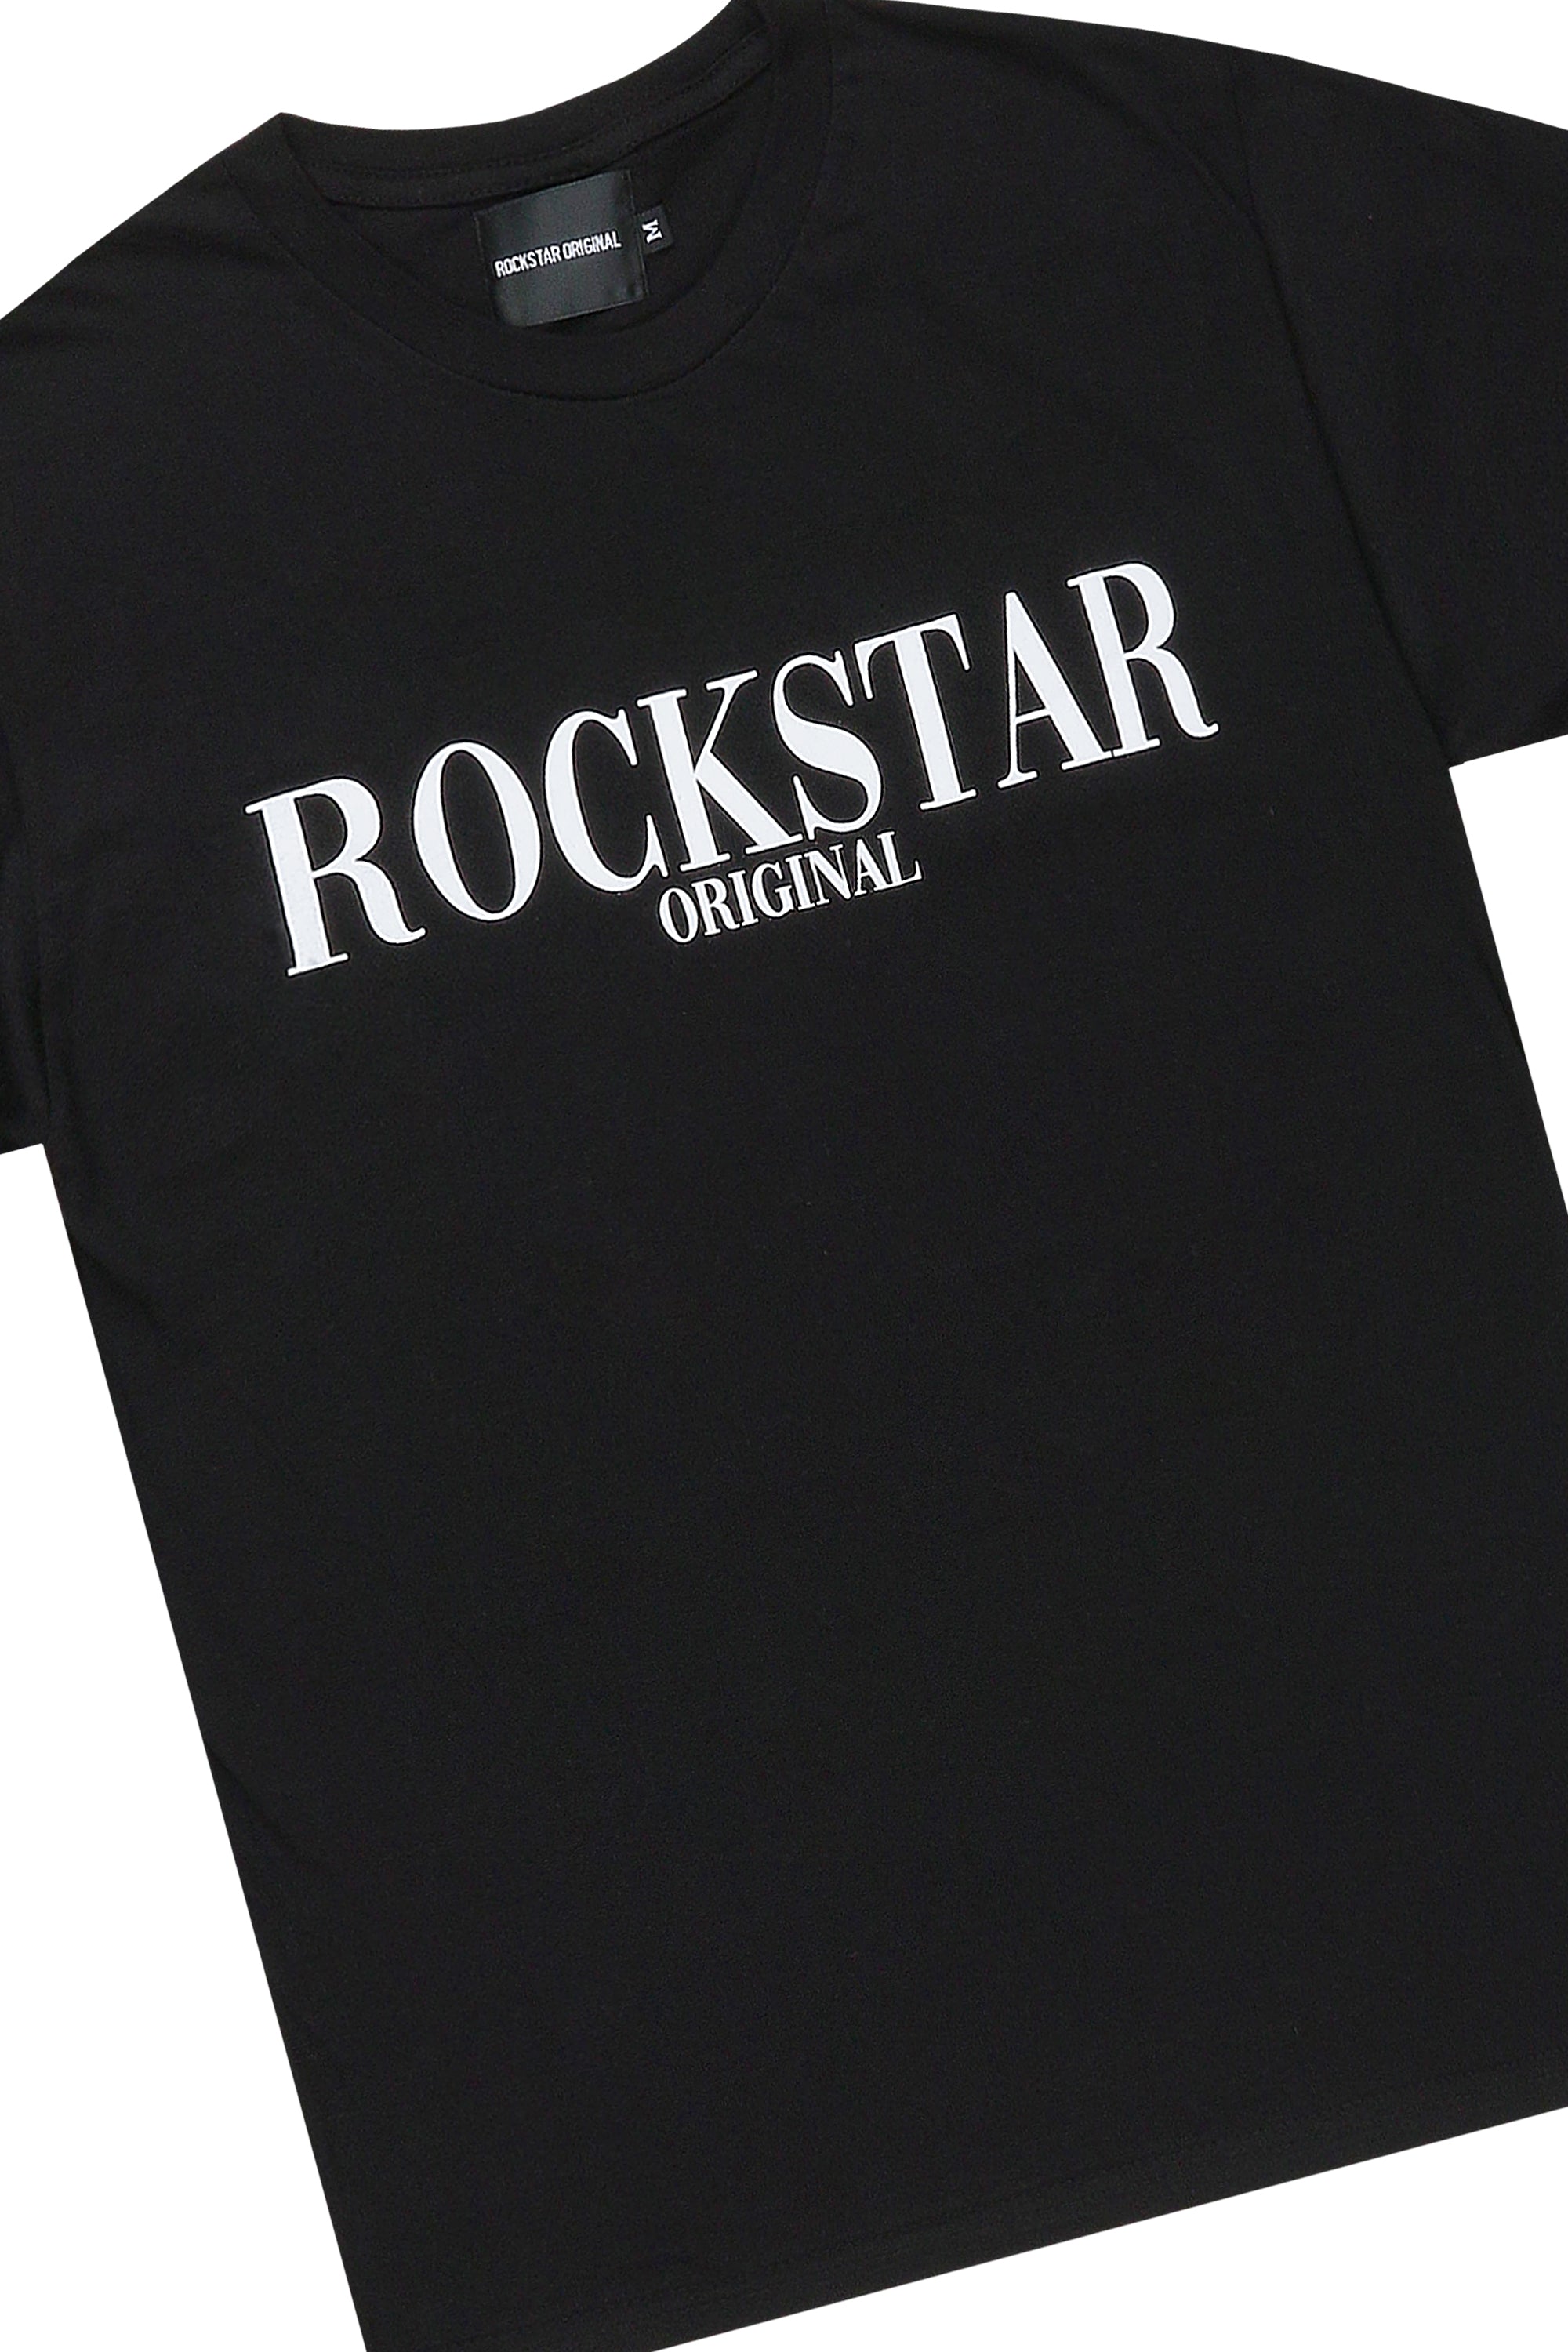 Octavio Black T-Shirt/Short Set– Rockstar Original